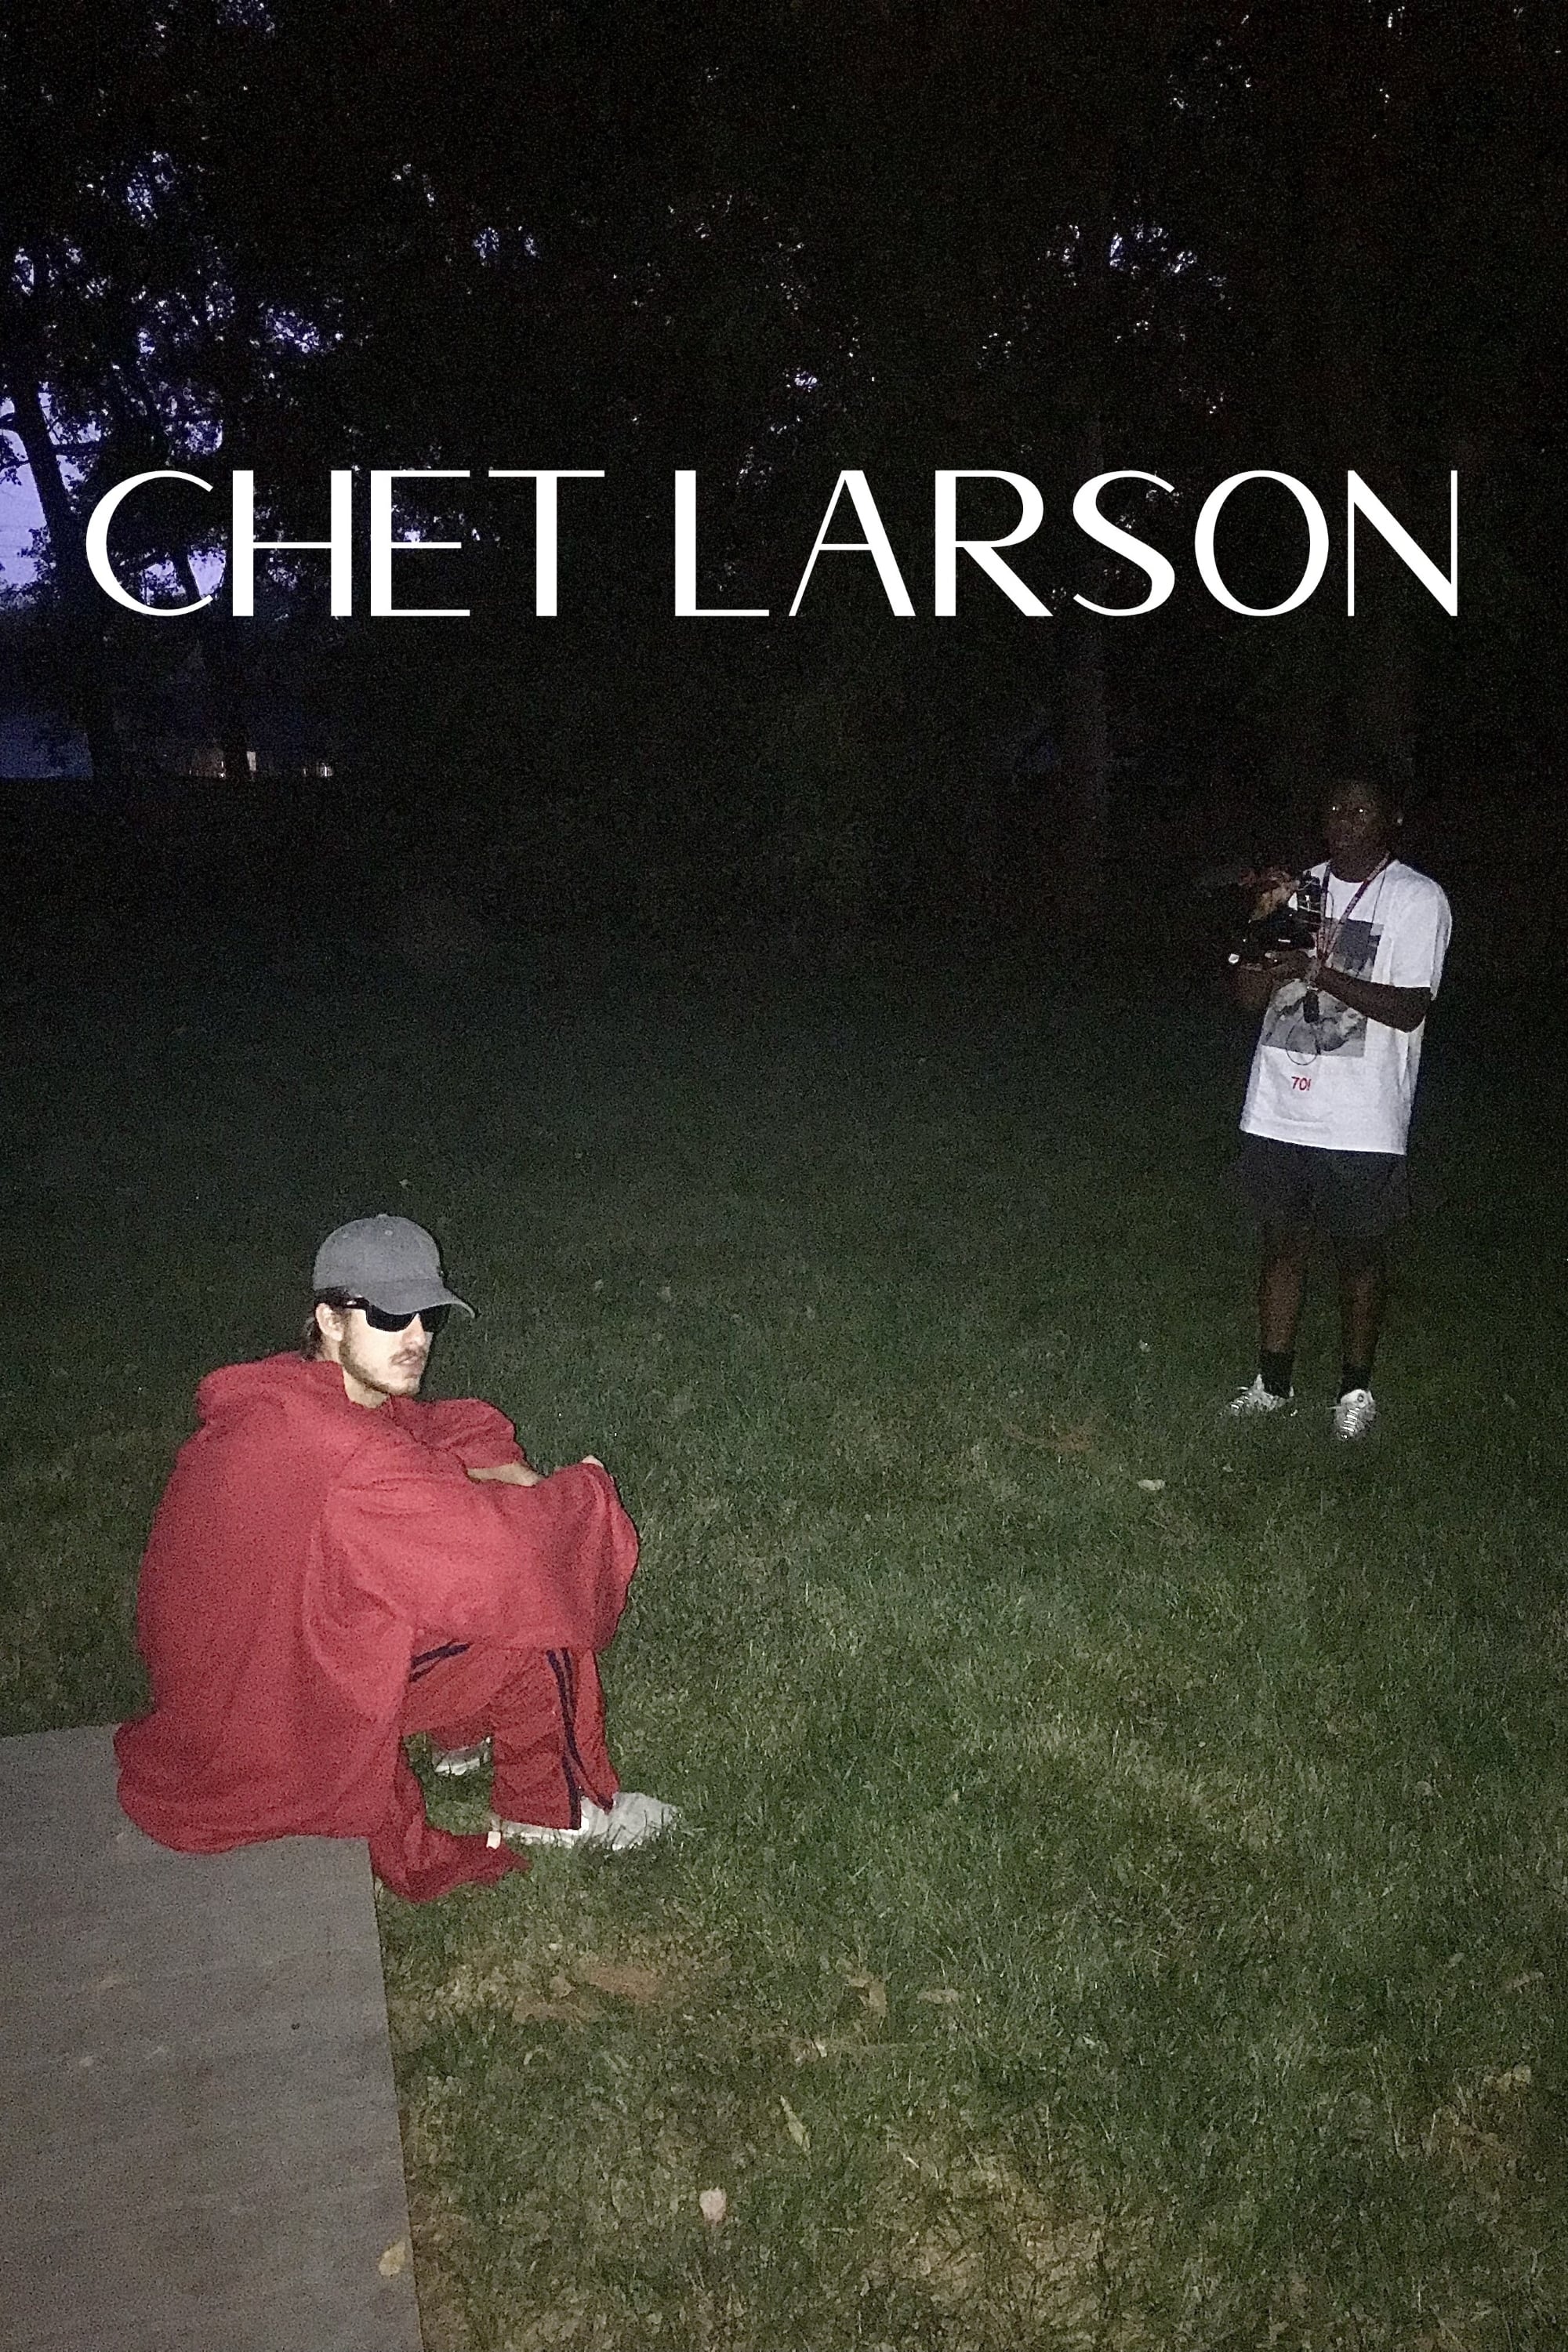 Chet Larson